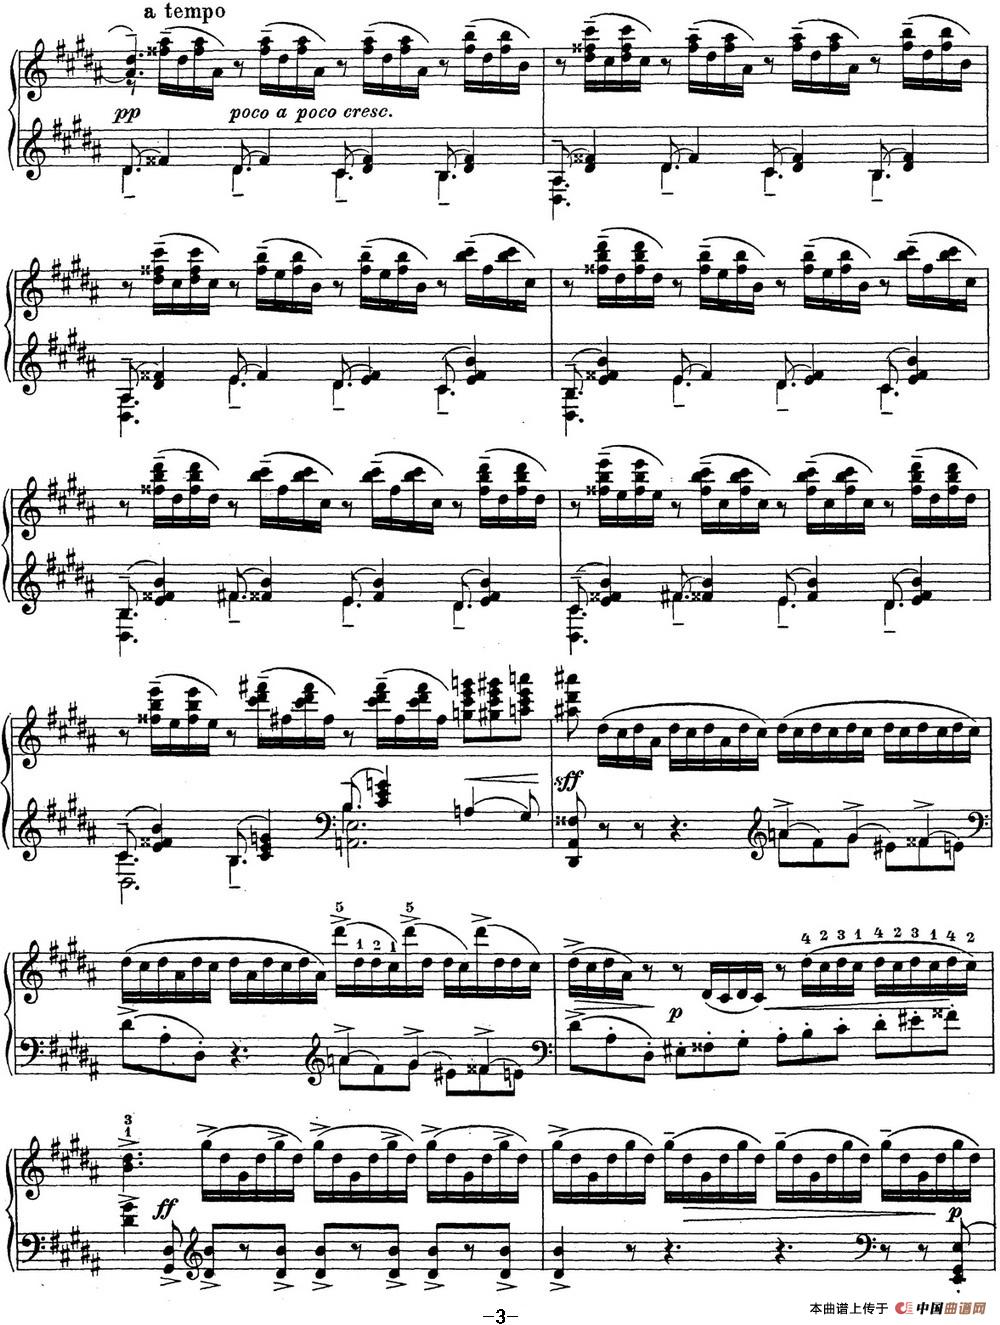 《拉赫玛尼诺夫 钢琴前奏曲23 升G小调 Op.32 No.12》钢琴曲谱图分享